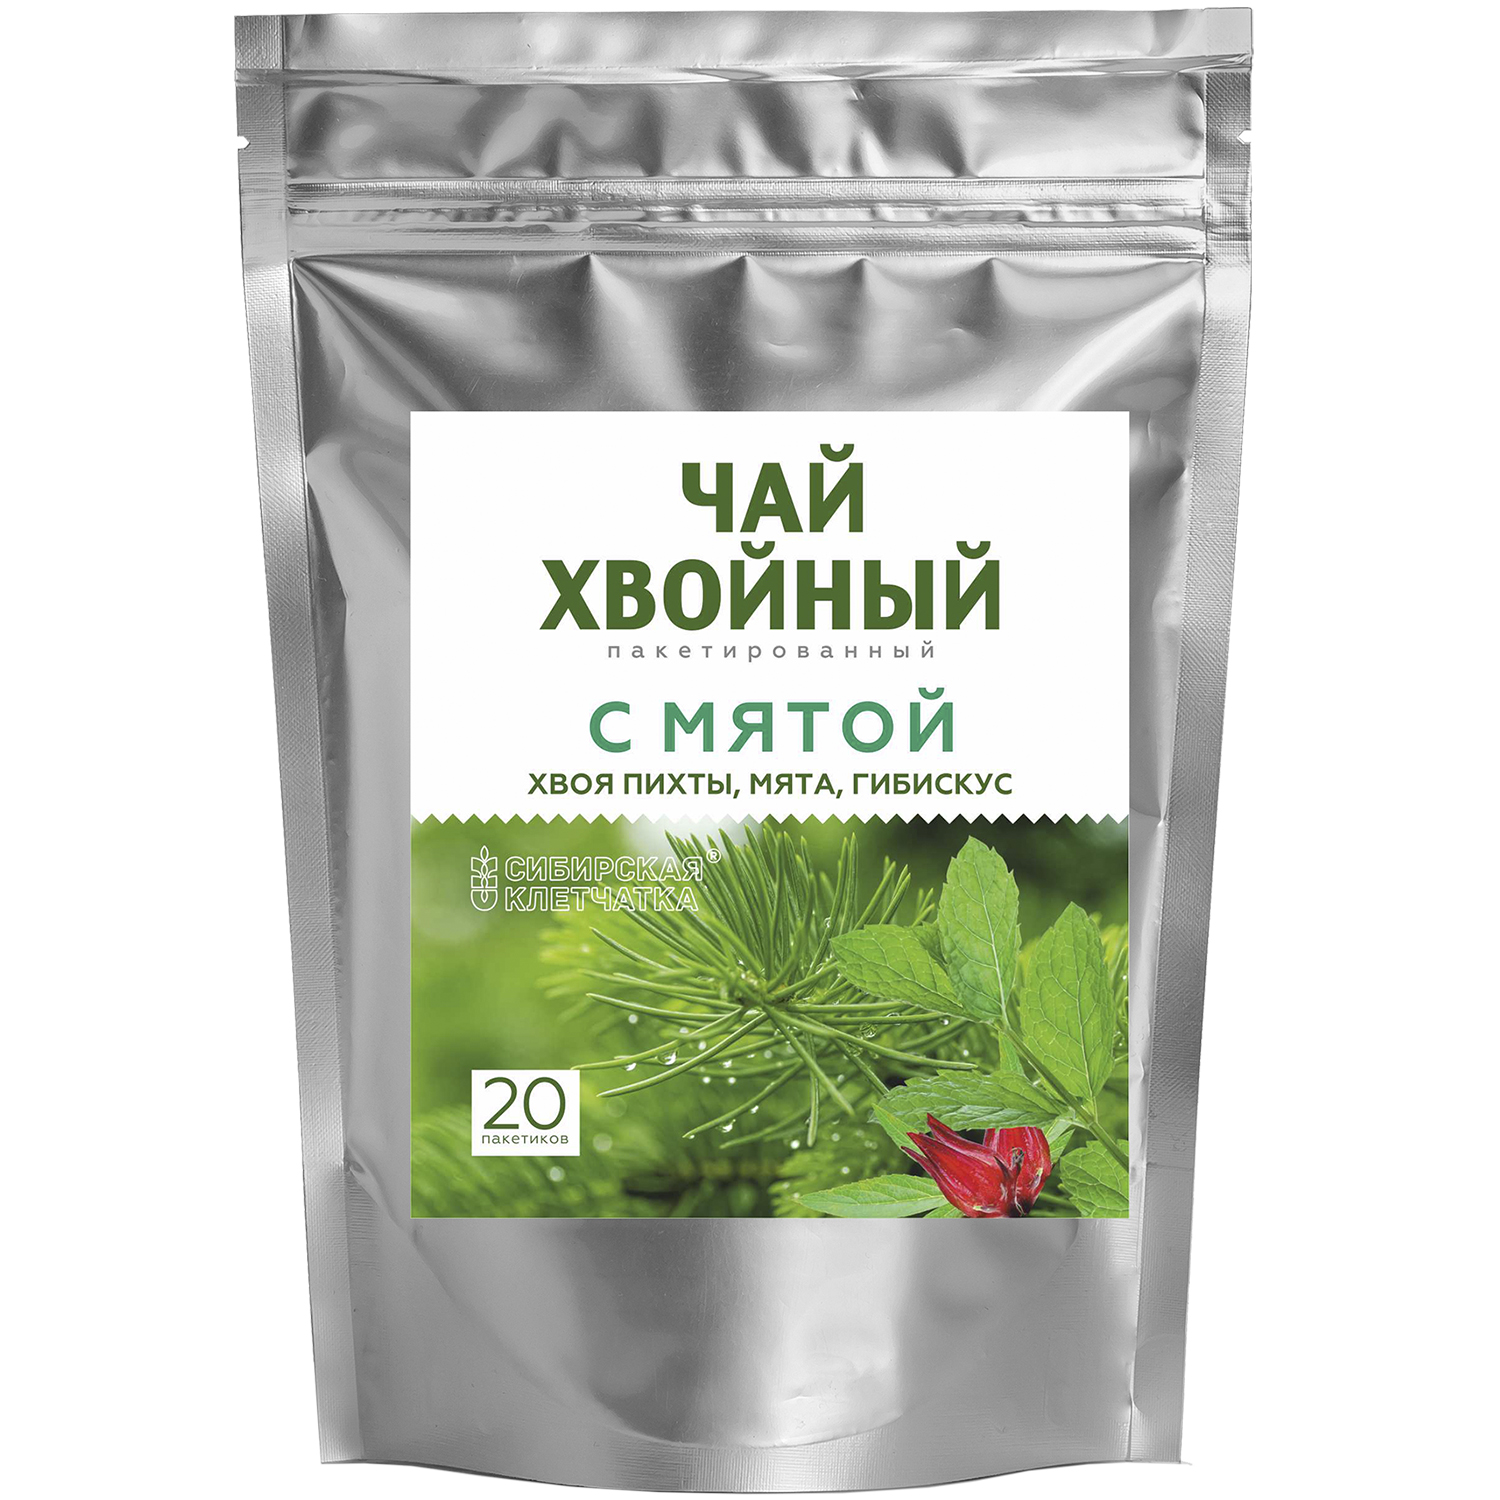 Чай хвойный Сибирская клетчатка с мятой 2г*20пакетиков - фото 1